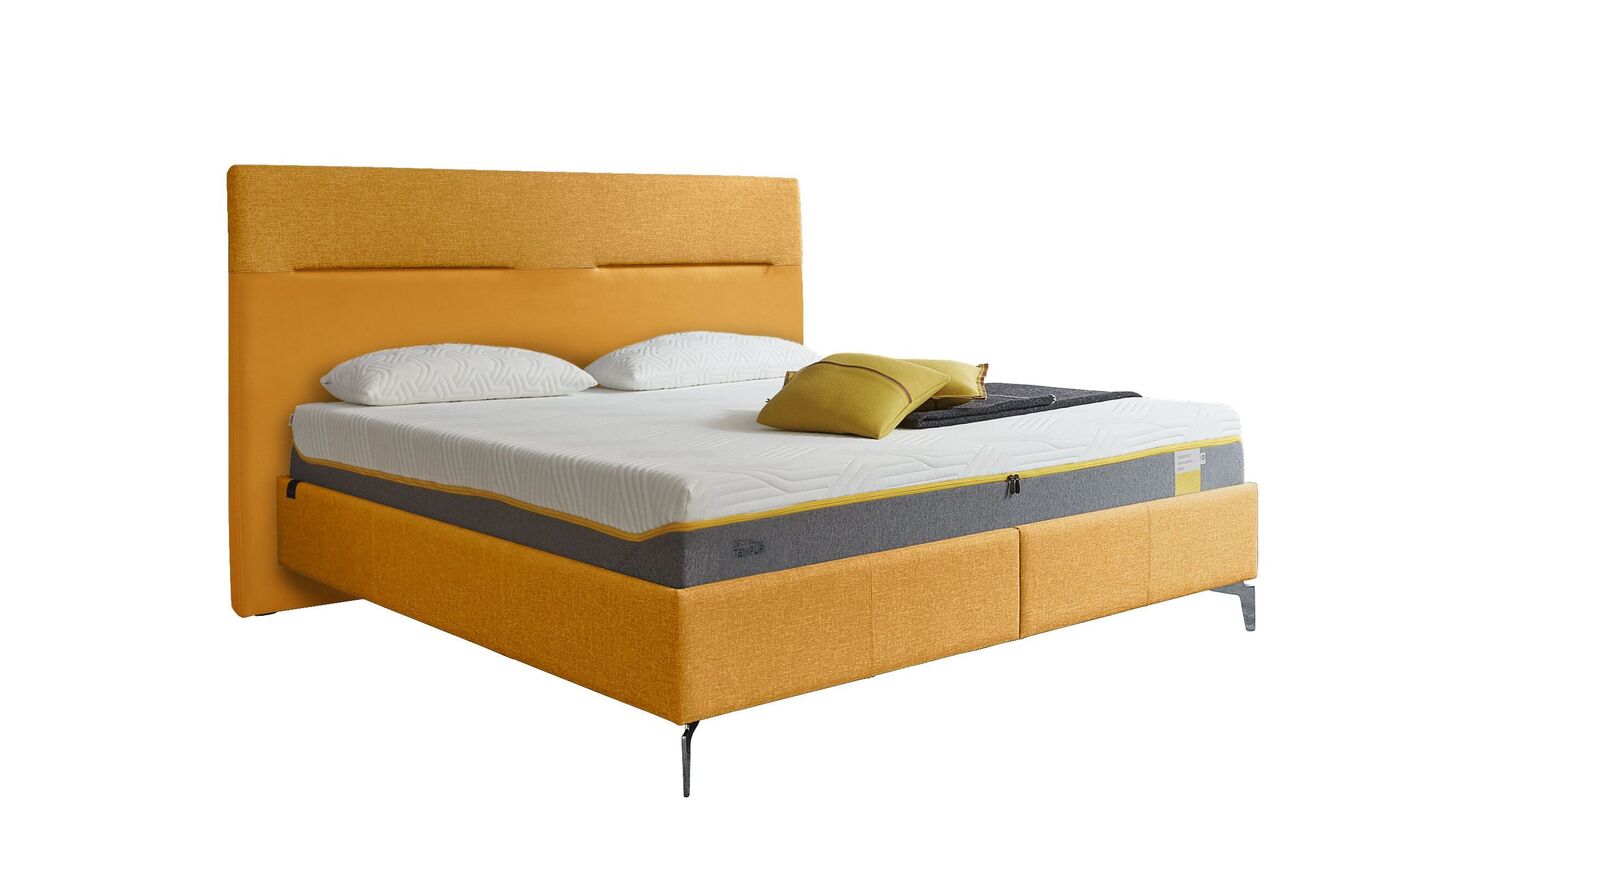 TEMPUR Bett Relax Texture mit Bezug in Webstoff und Kunstleder in Gelb